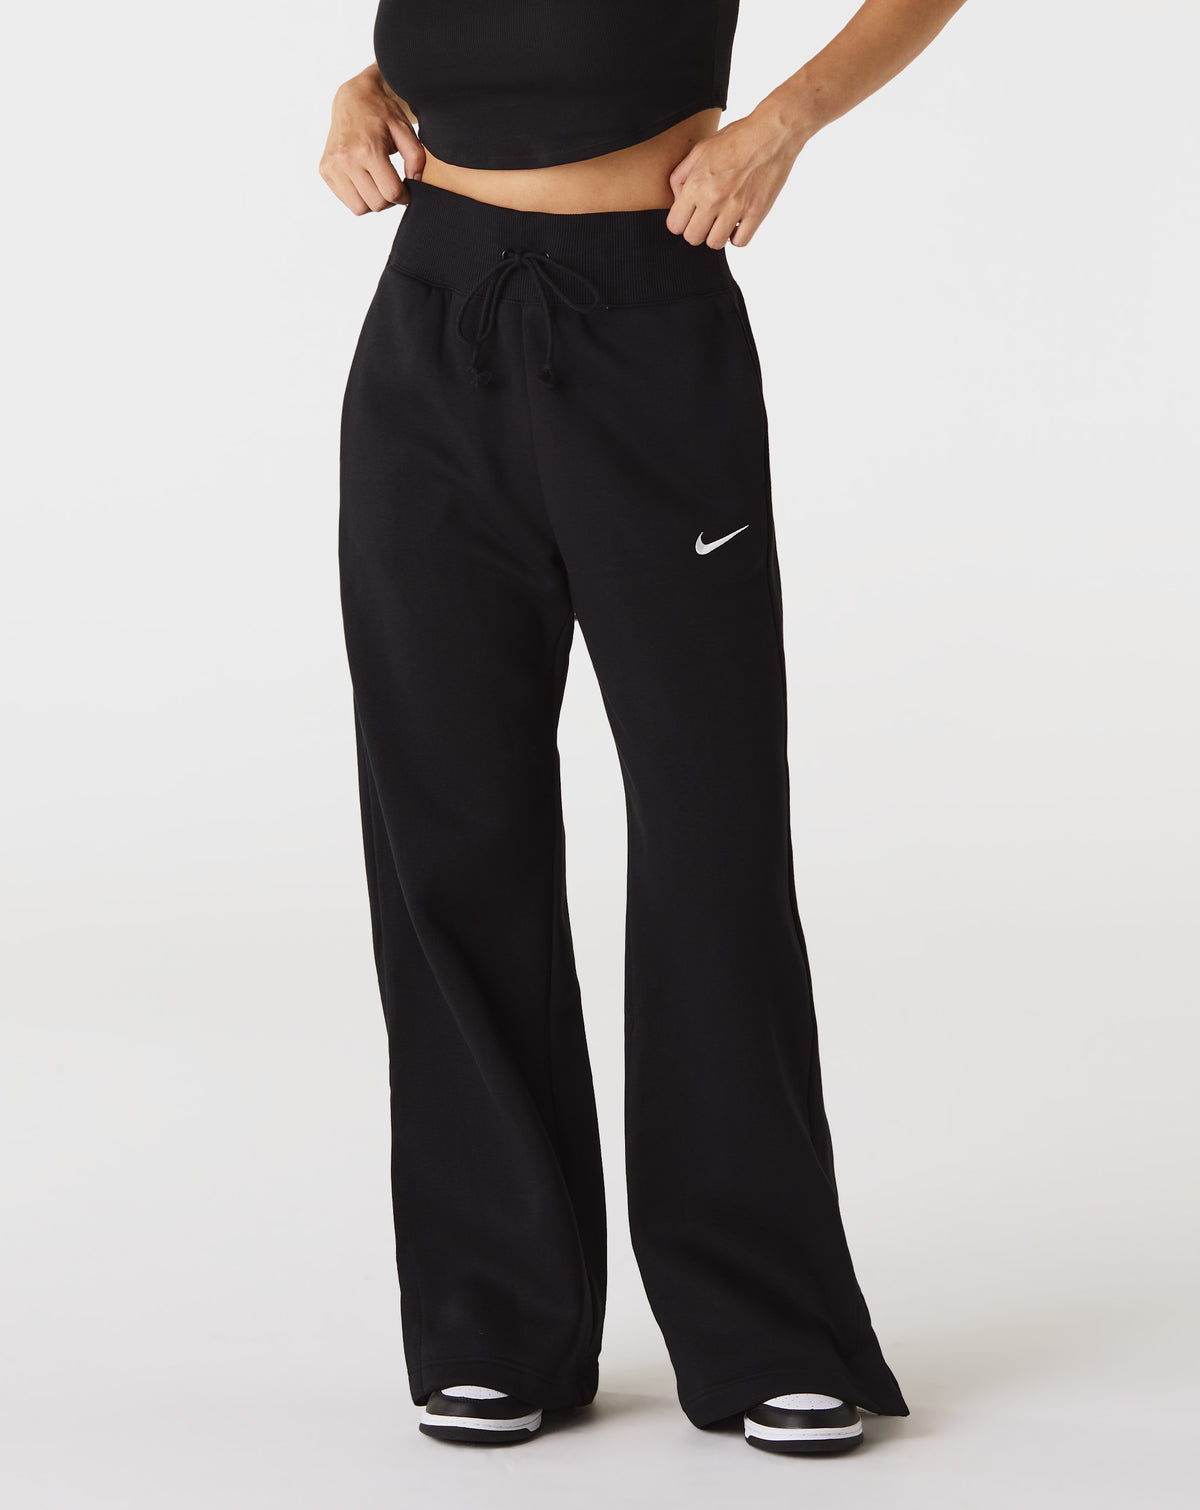 Nike Women's Phoenix Fleece High-Waisted Wide-Leg Sweatpants - Rule of Next Apparel